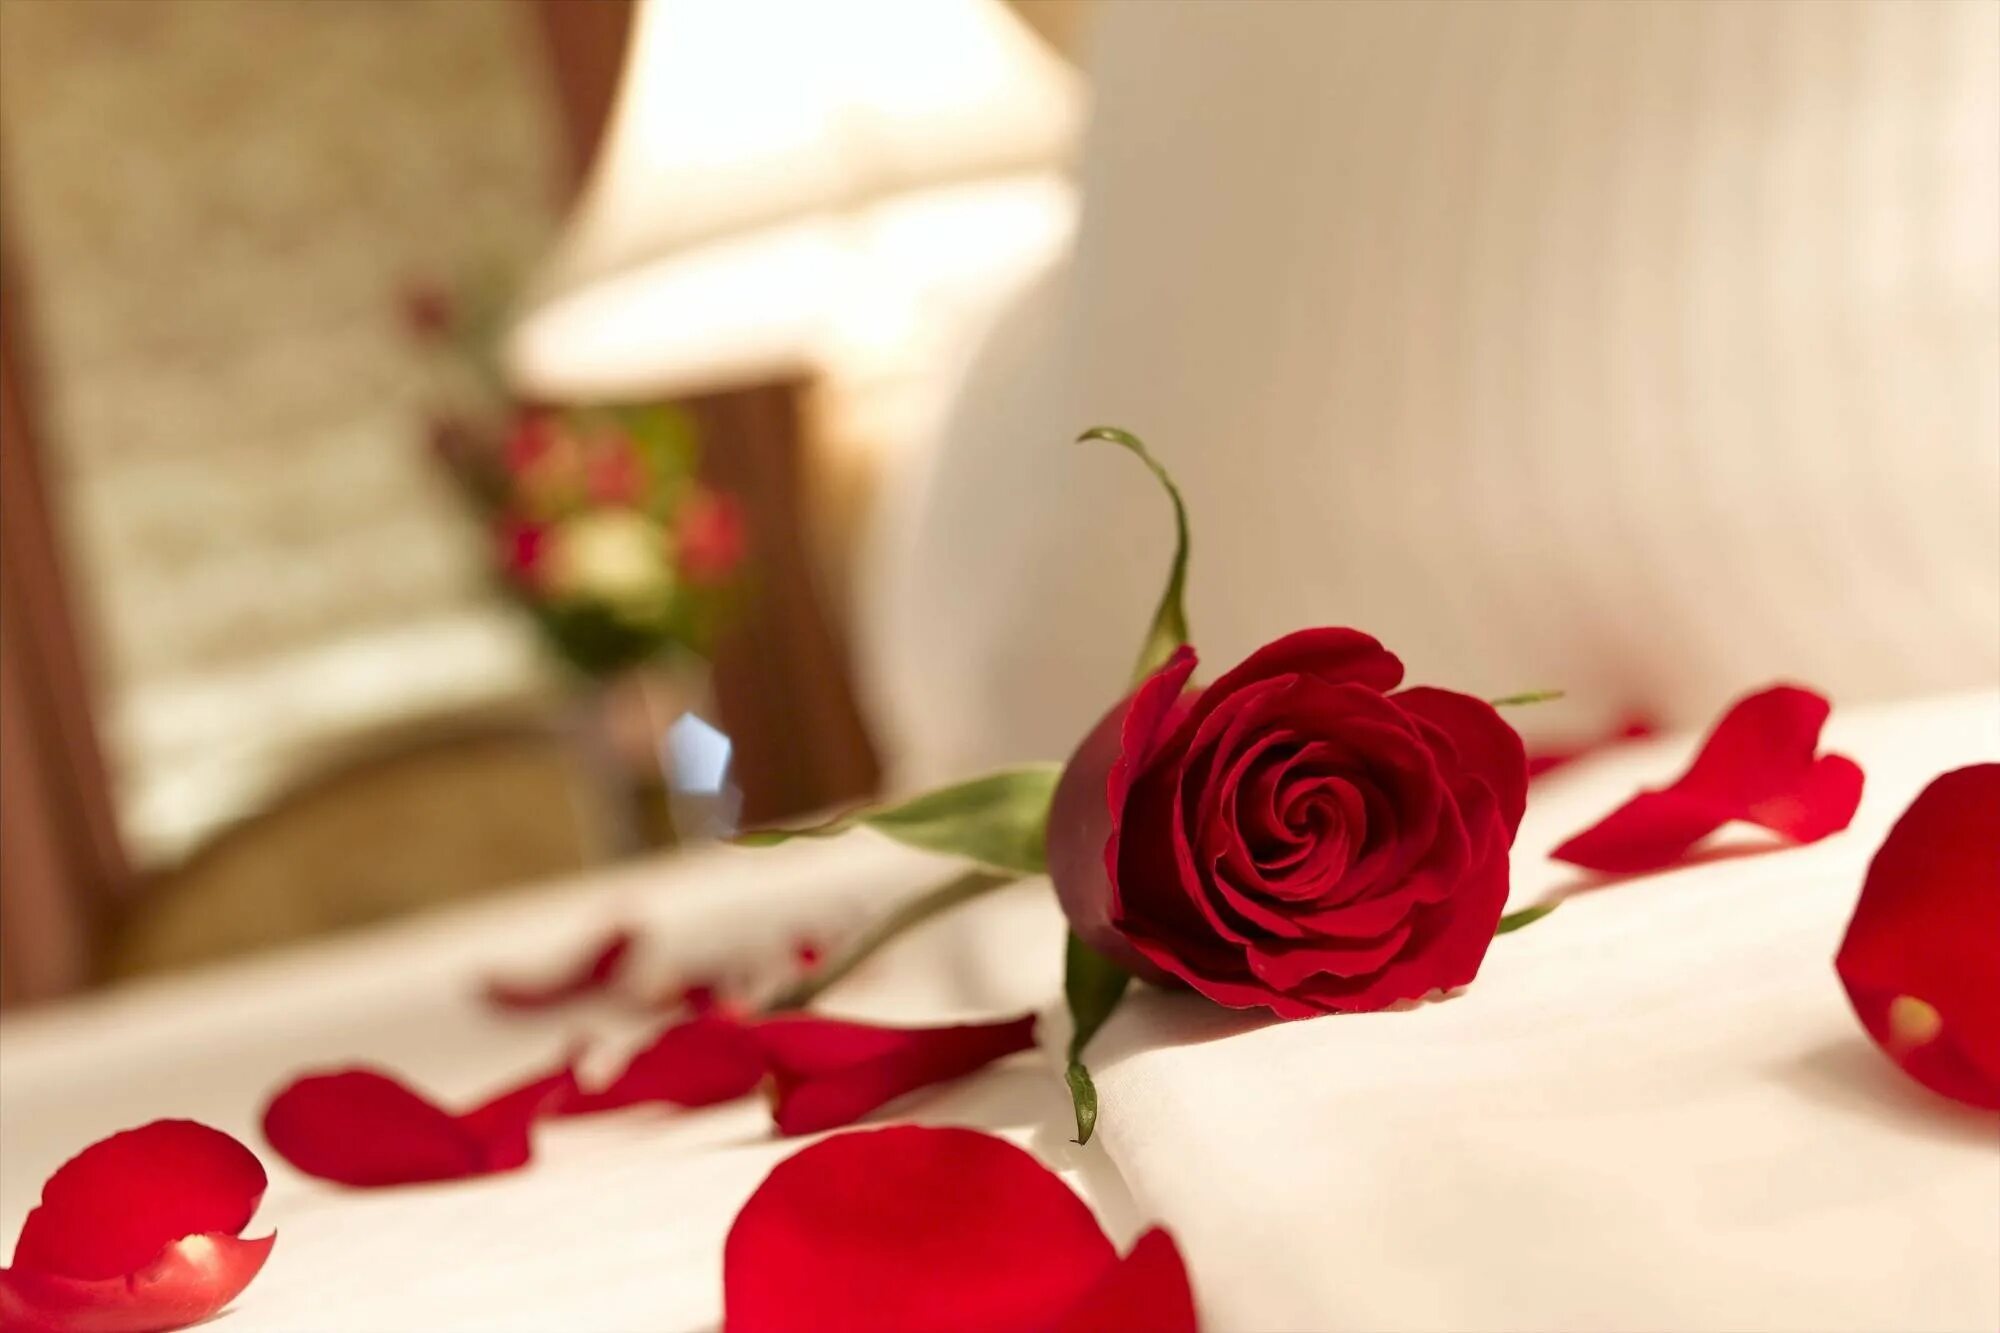 Rose romance. Цветы в постель. Красивые романтические цветы. Цветы лежат. Лепестки роз на постели.